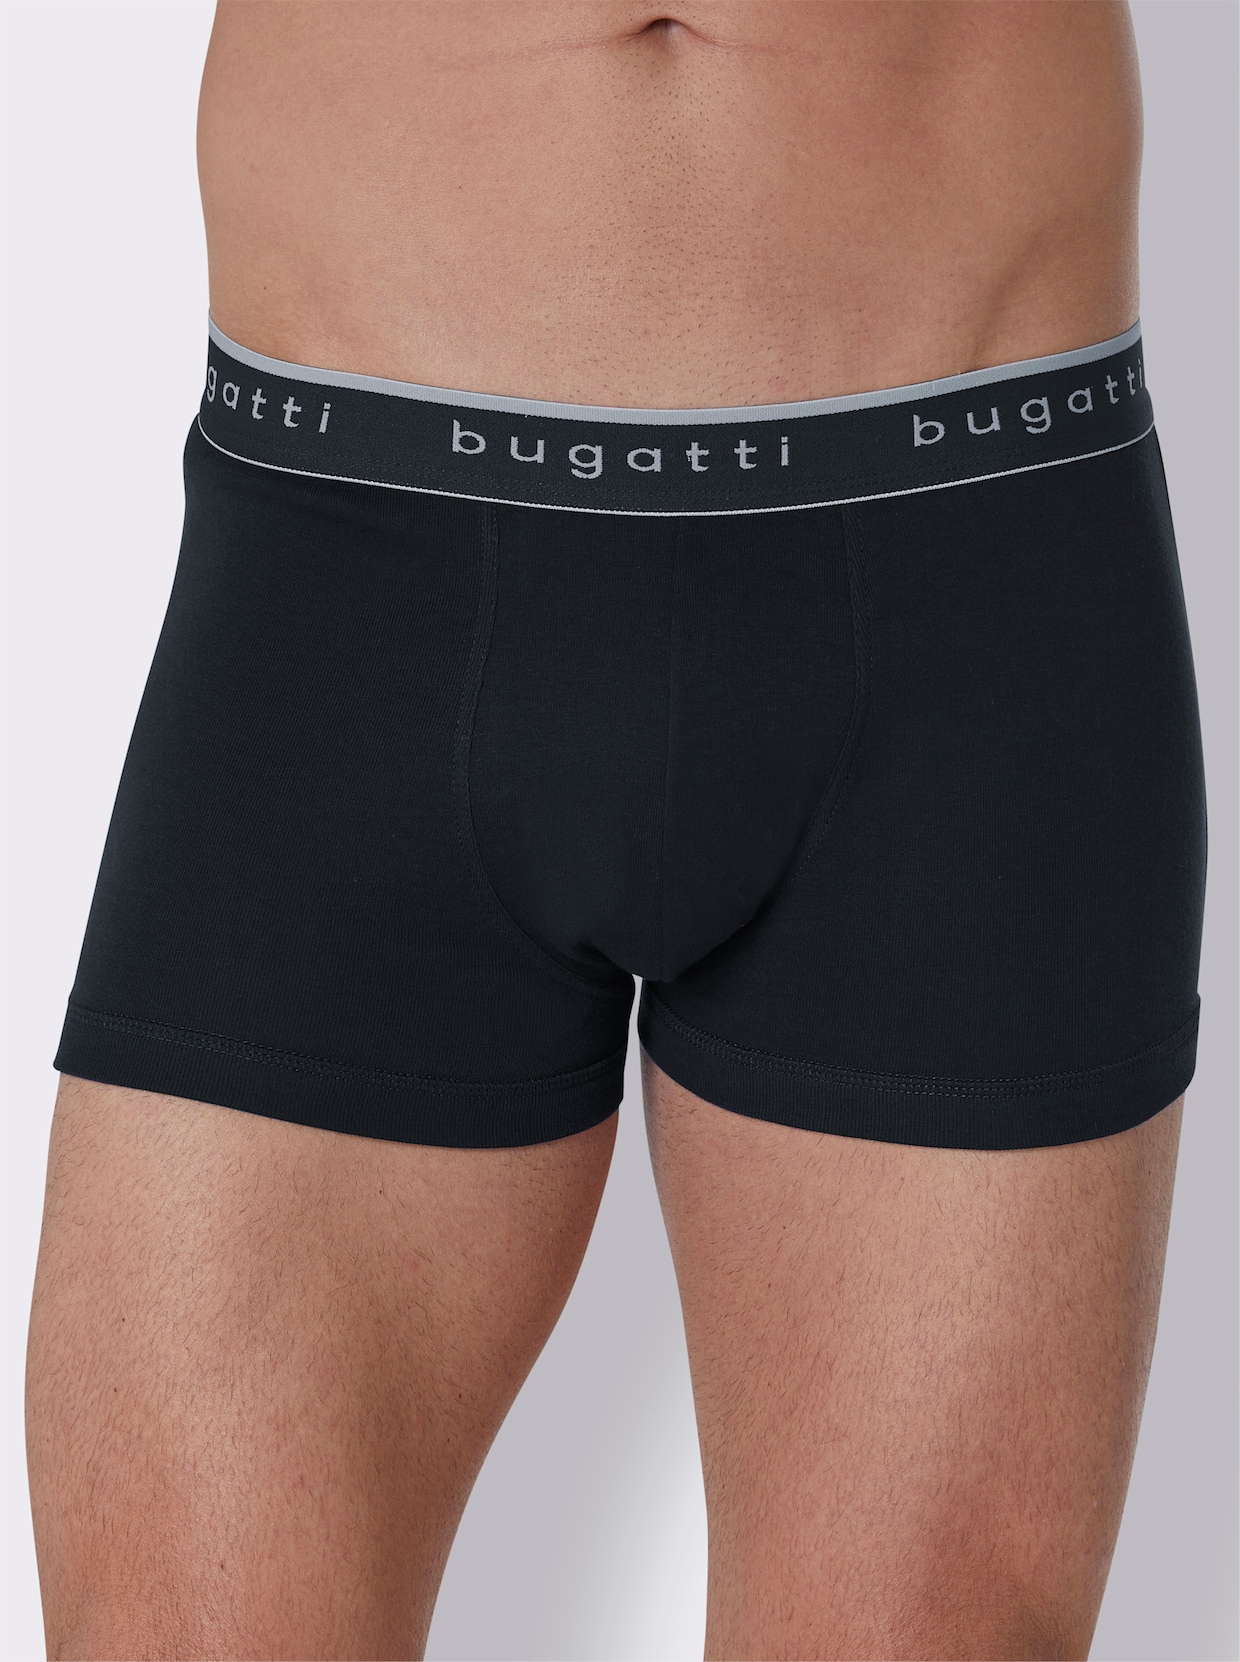 bugatti Pants - schwarz